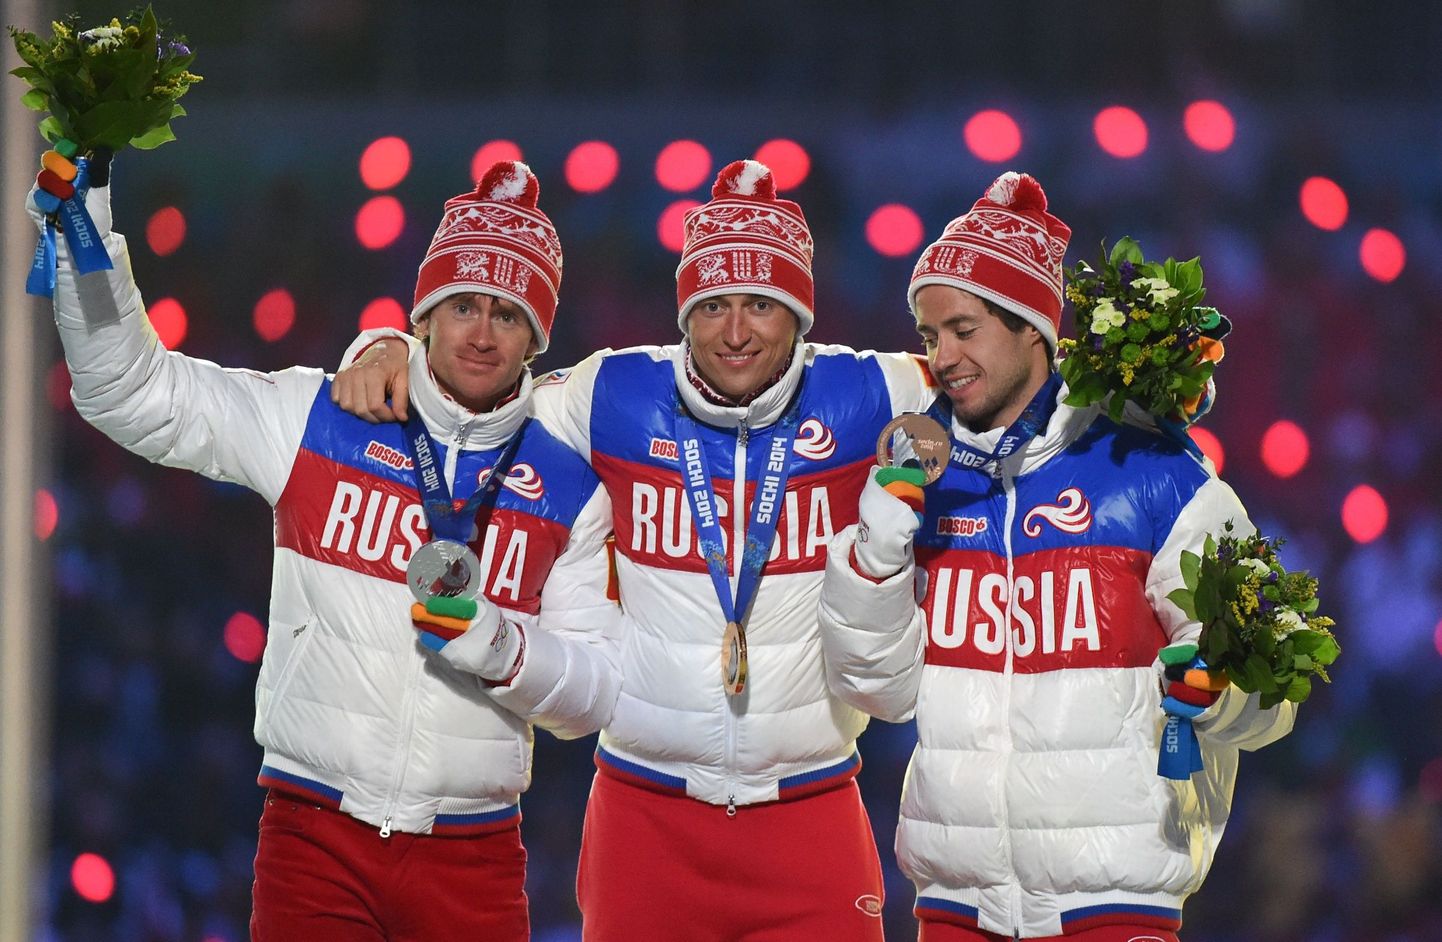 Pilt, mida Pyeongchangi olümpial kindlasti ei näe: Maksim Võlegžanin ja Aleksandr Legkov on võistluskeelu all, samuti ei tohi venelased ilmselt mängudel kanda oma riigi nimega ega lipuvärvides dressi.